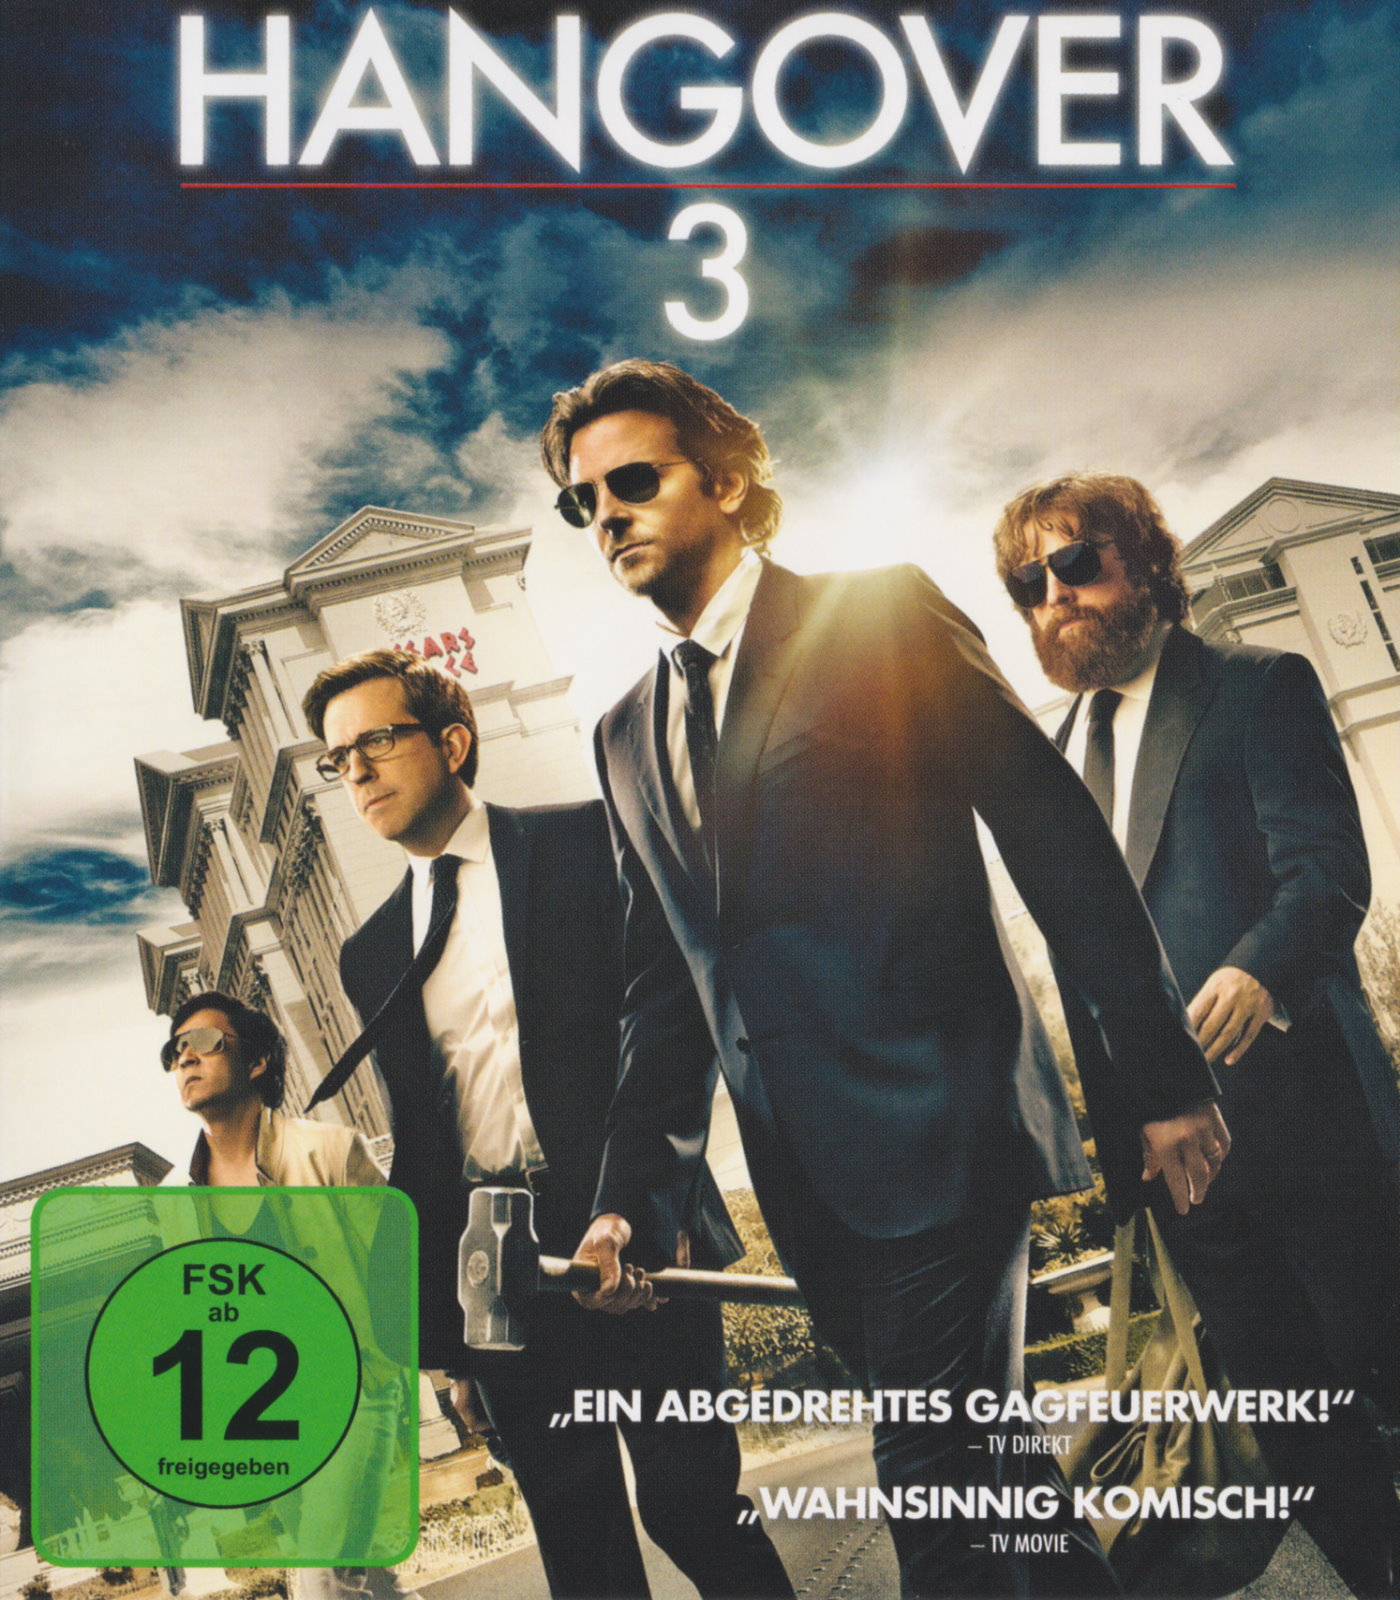 Cover - Hangover 3.jpg